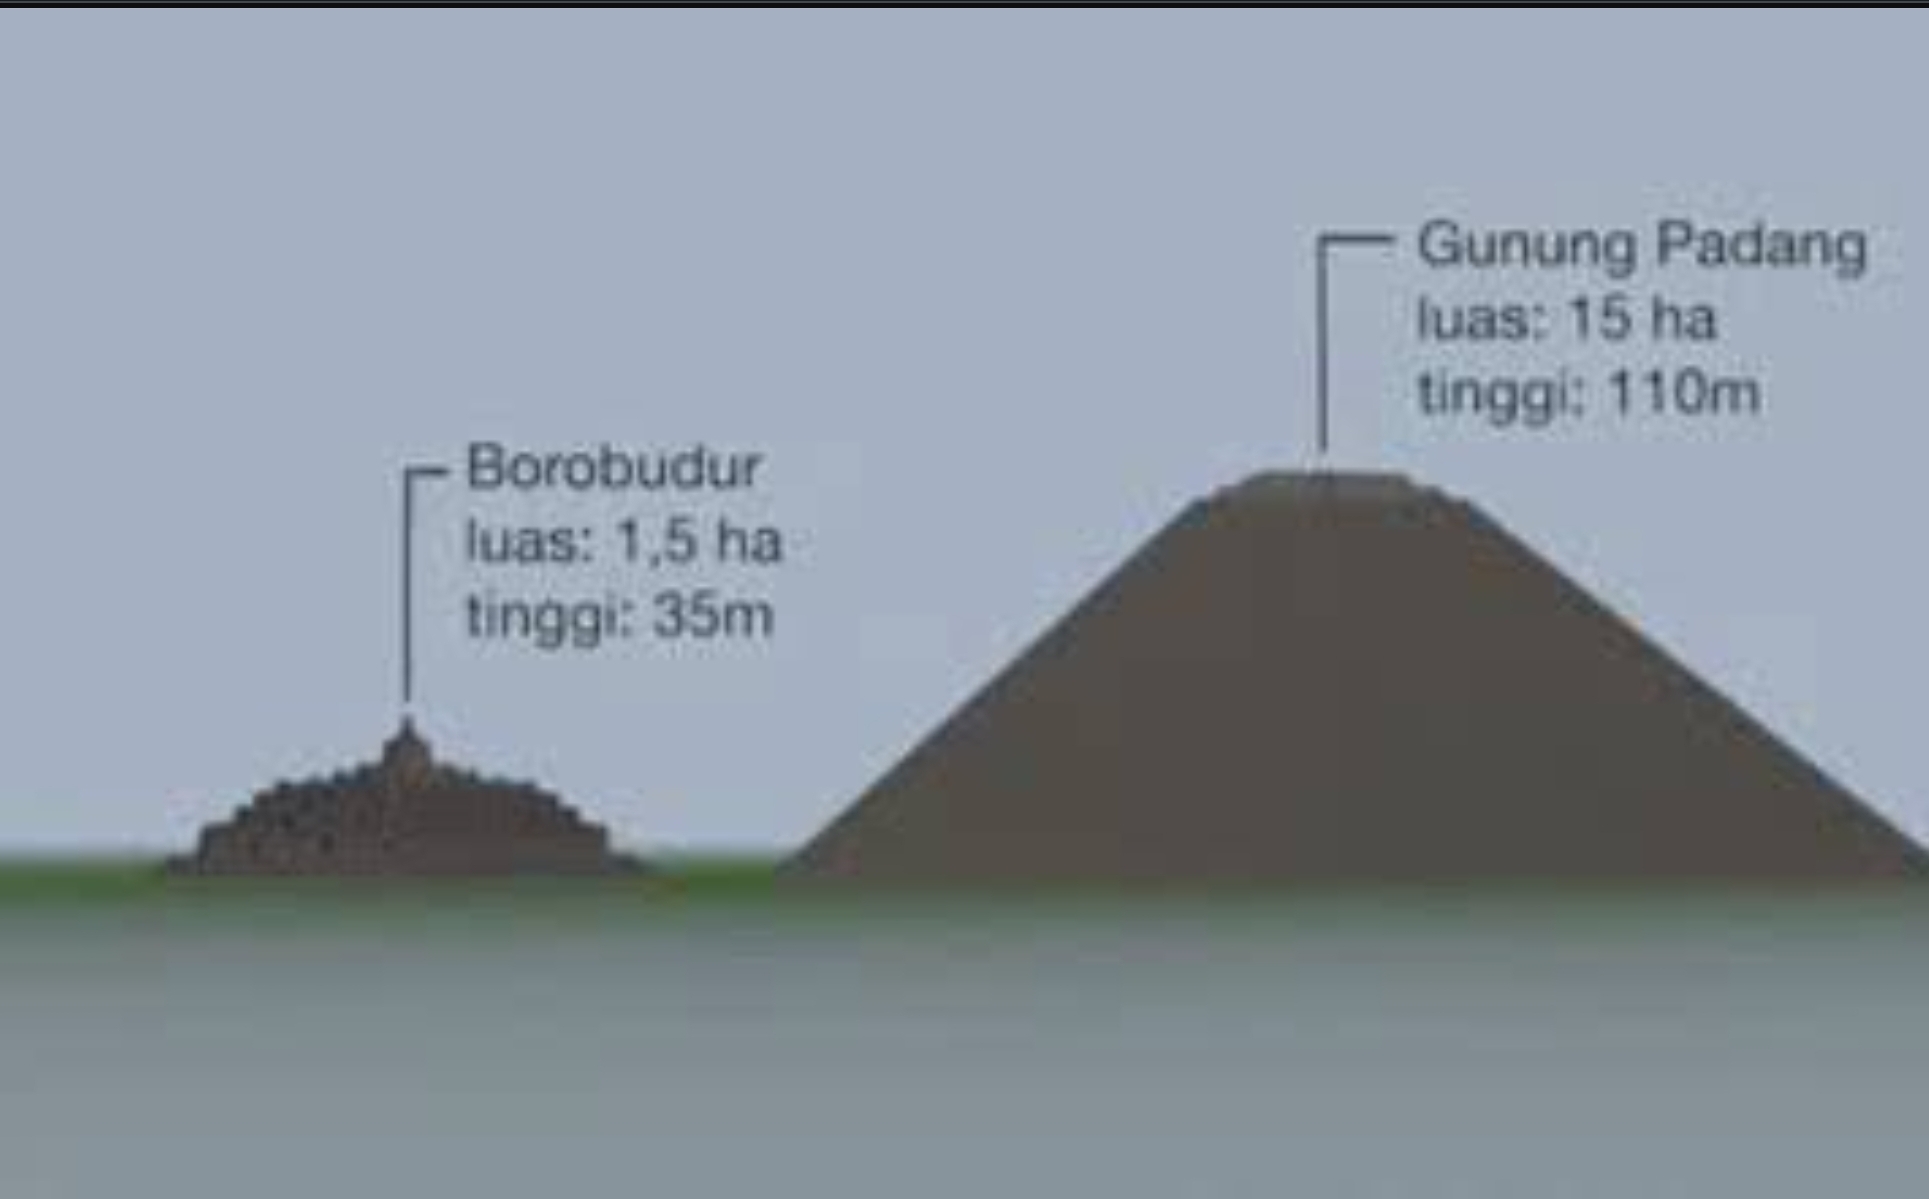 Perbandingan Situs Gunung Padang dan Borobudur, Luas 10 Kali Lipat, Tinggi 3 Kali Lipat